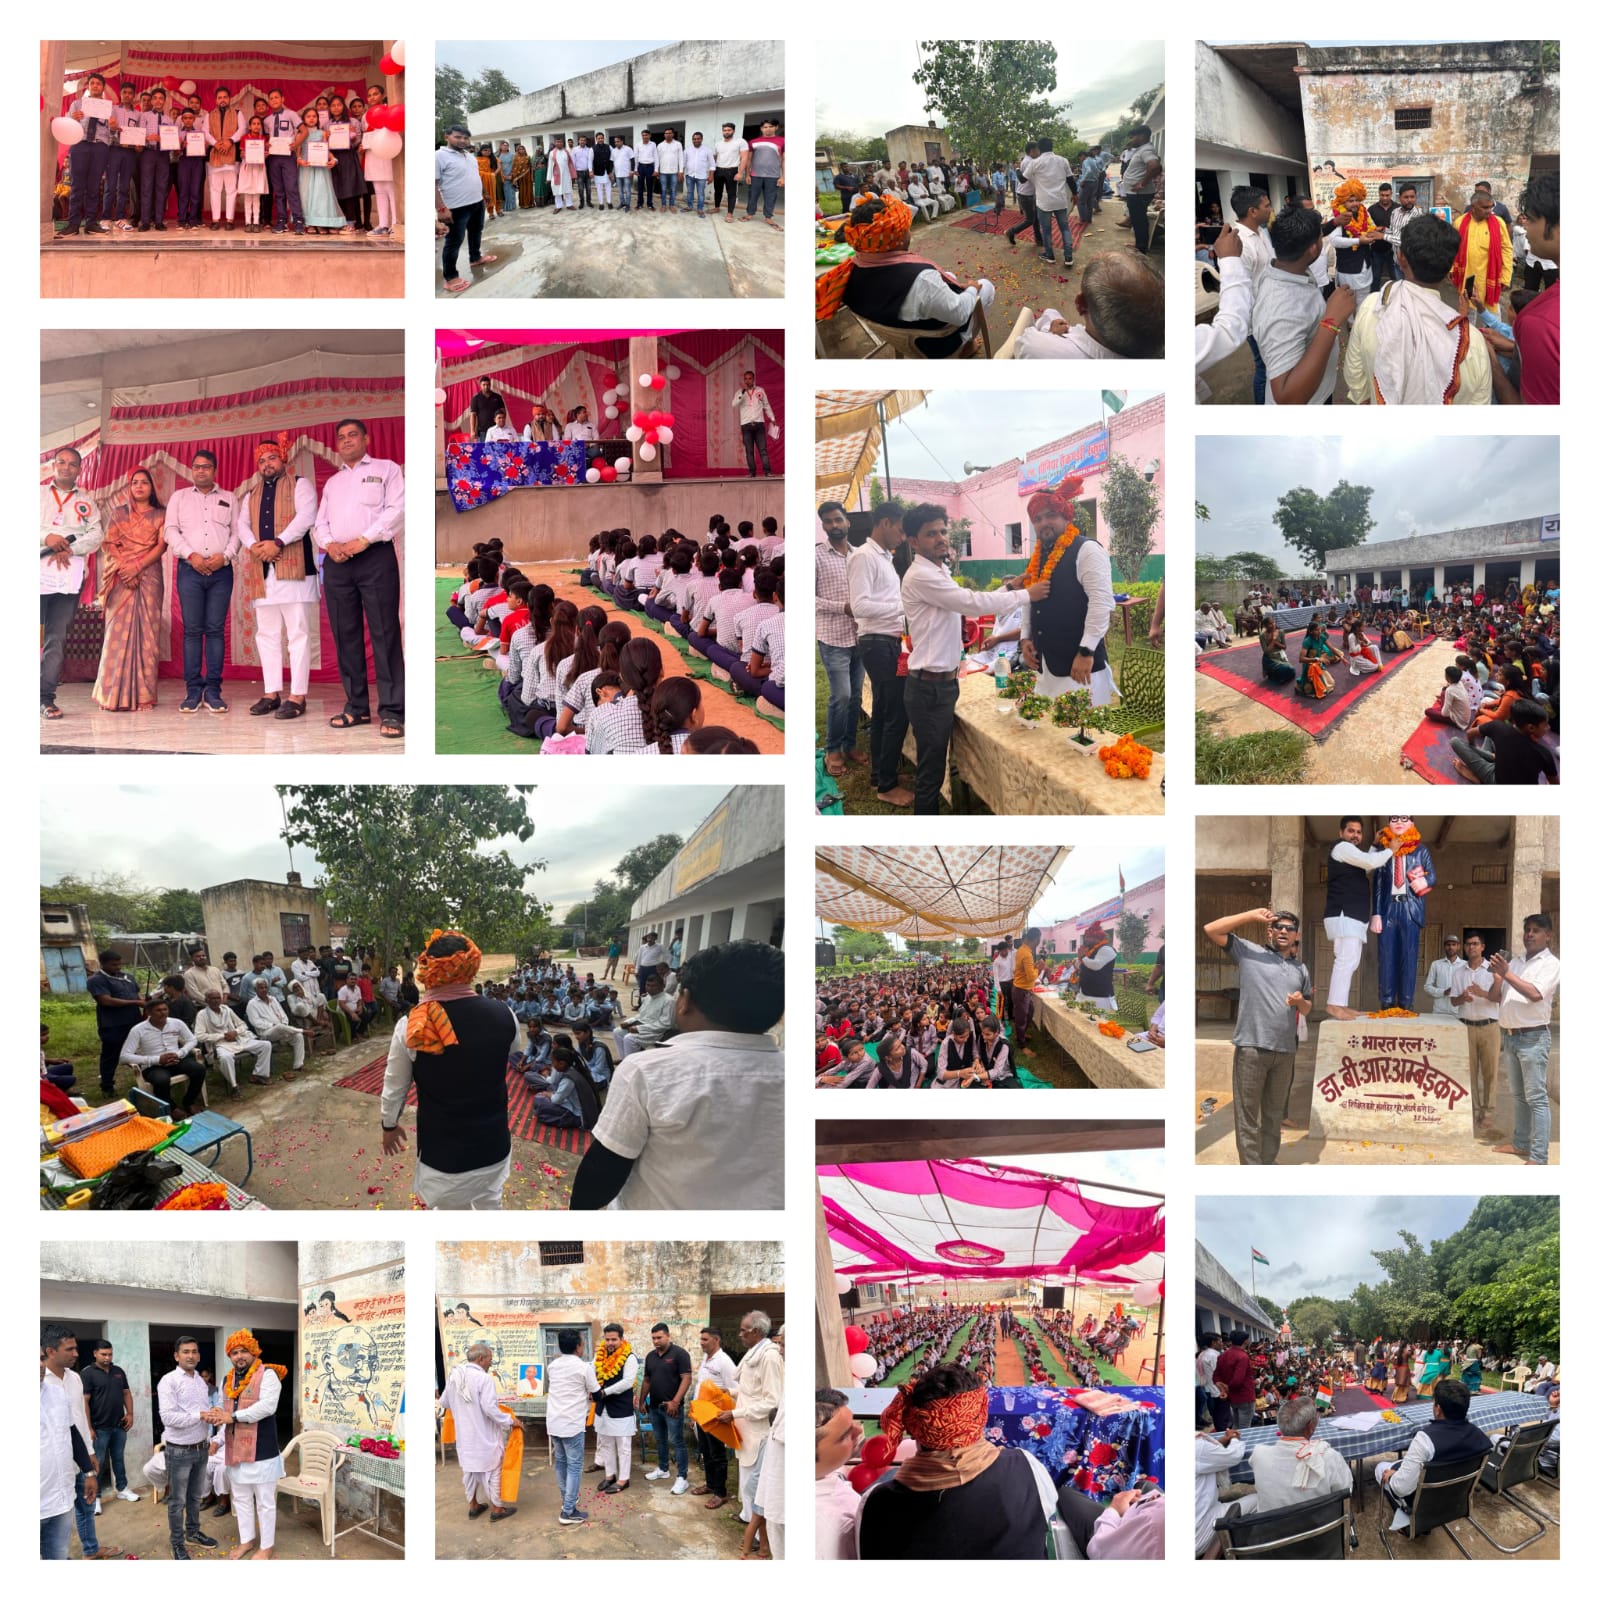 भाजपा नेता शकील खान ने स्कूली बच्चों के साथ मनाया स्वतंत्रता दिवस